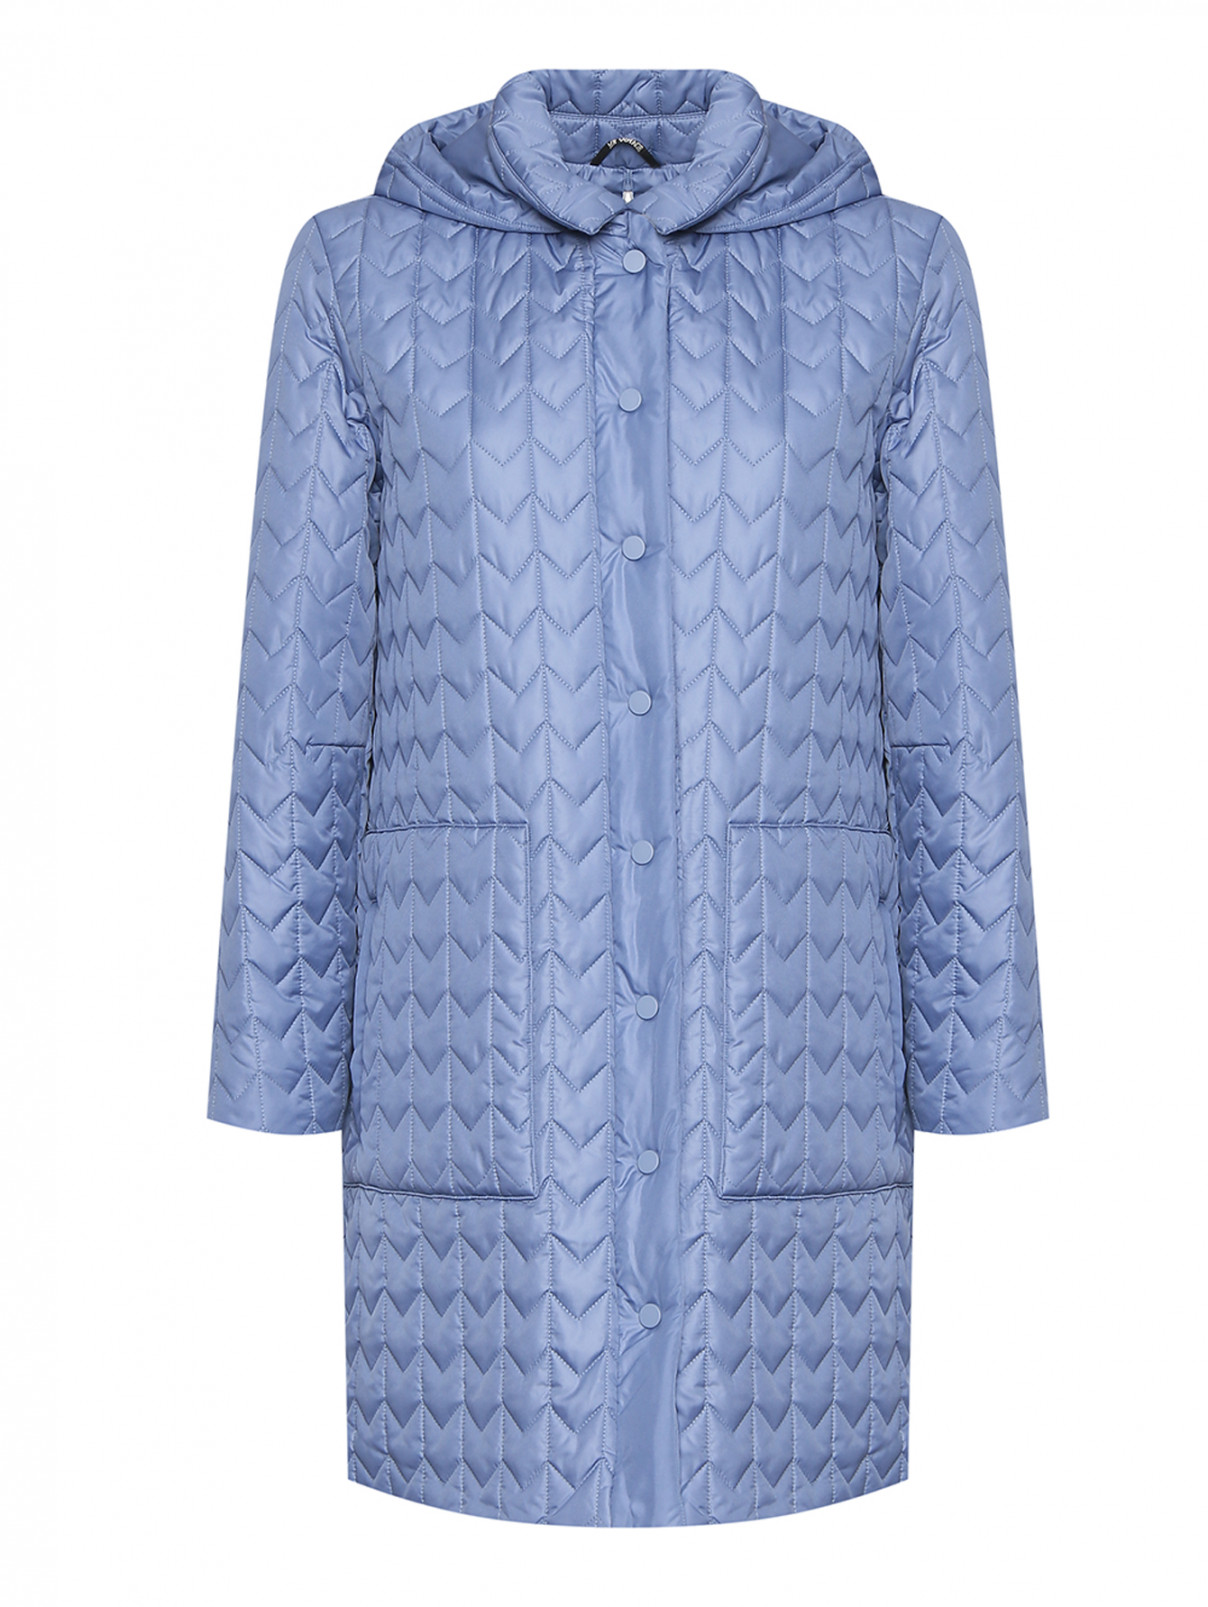 Удлиненная стеганая куртка с капюшоном Marina Rinaldi  –  Общий вид  – Цвет:  Синий